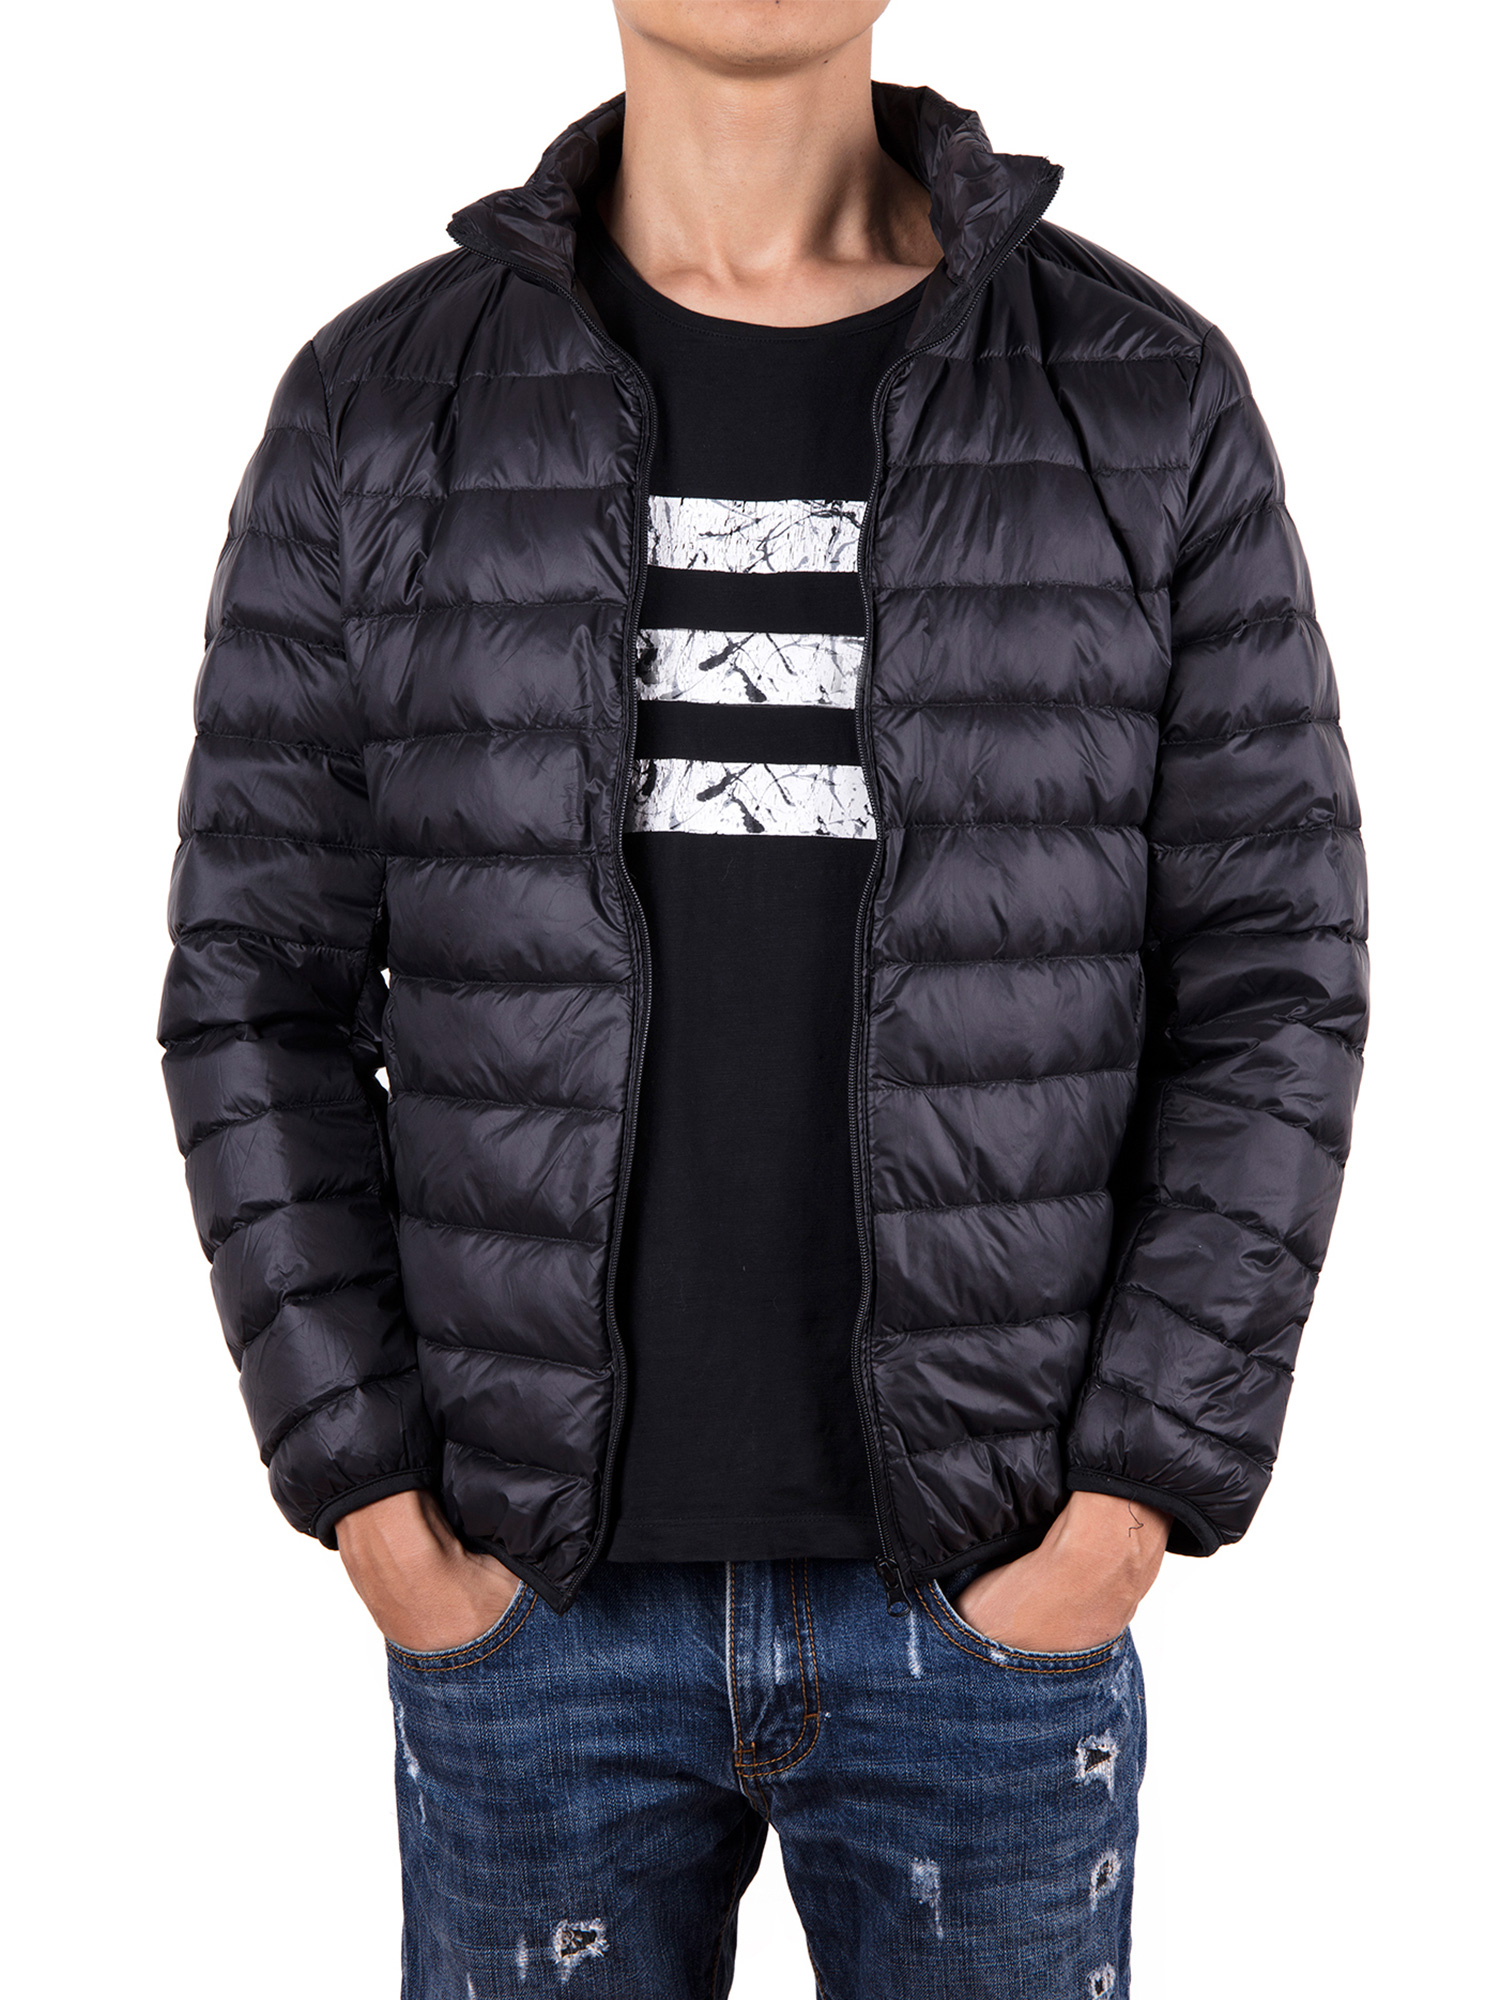 Men Down Jacket Outwear Puffer Coats Casual Zip Up Windbreaker Lightweight Winter Jackets Black - image 2 of 8